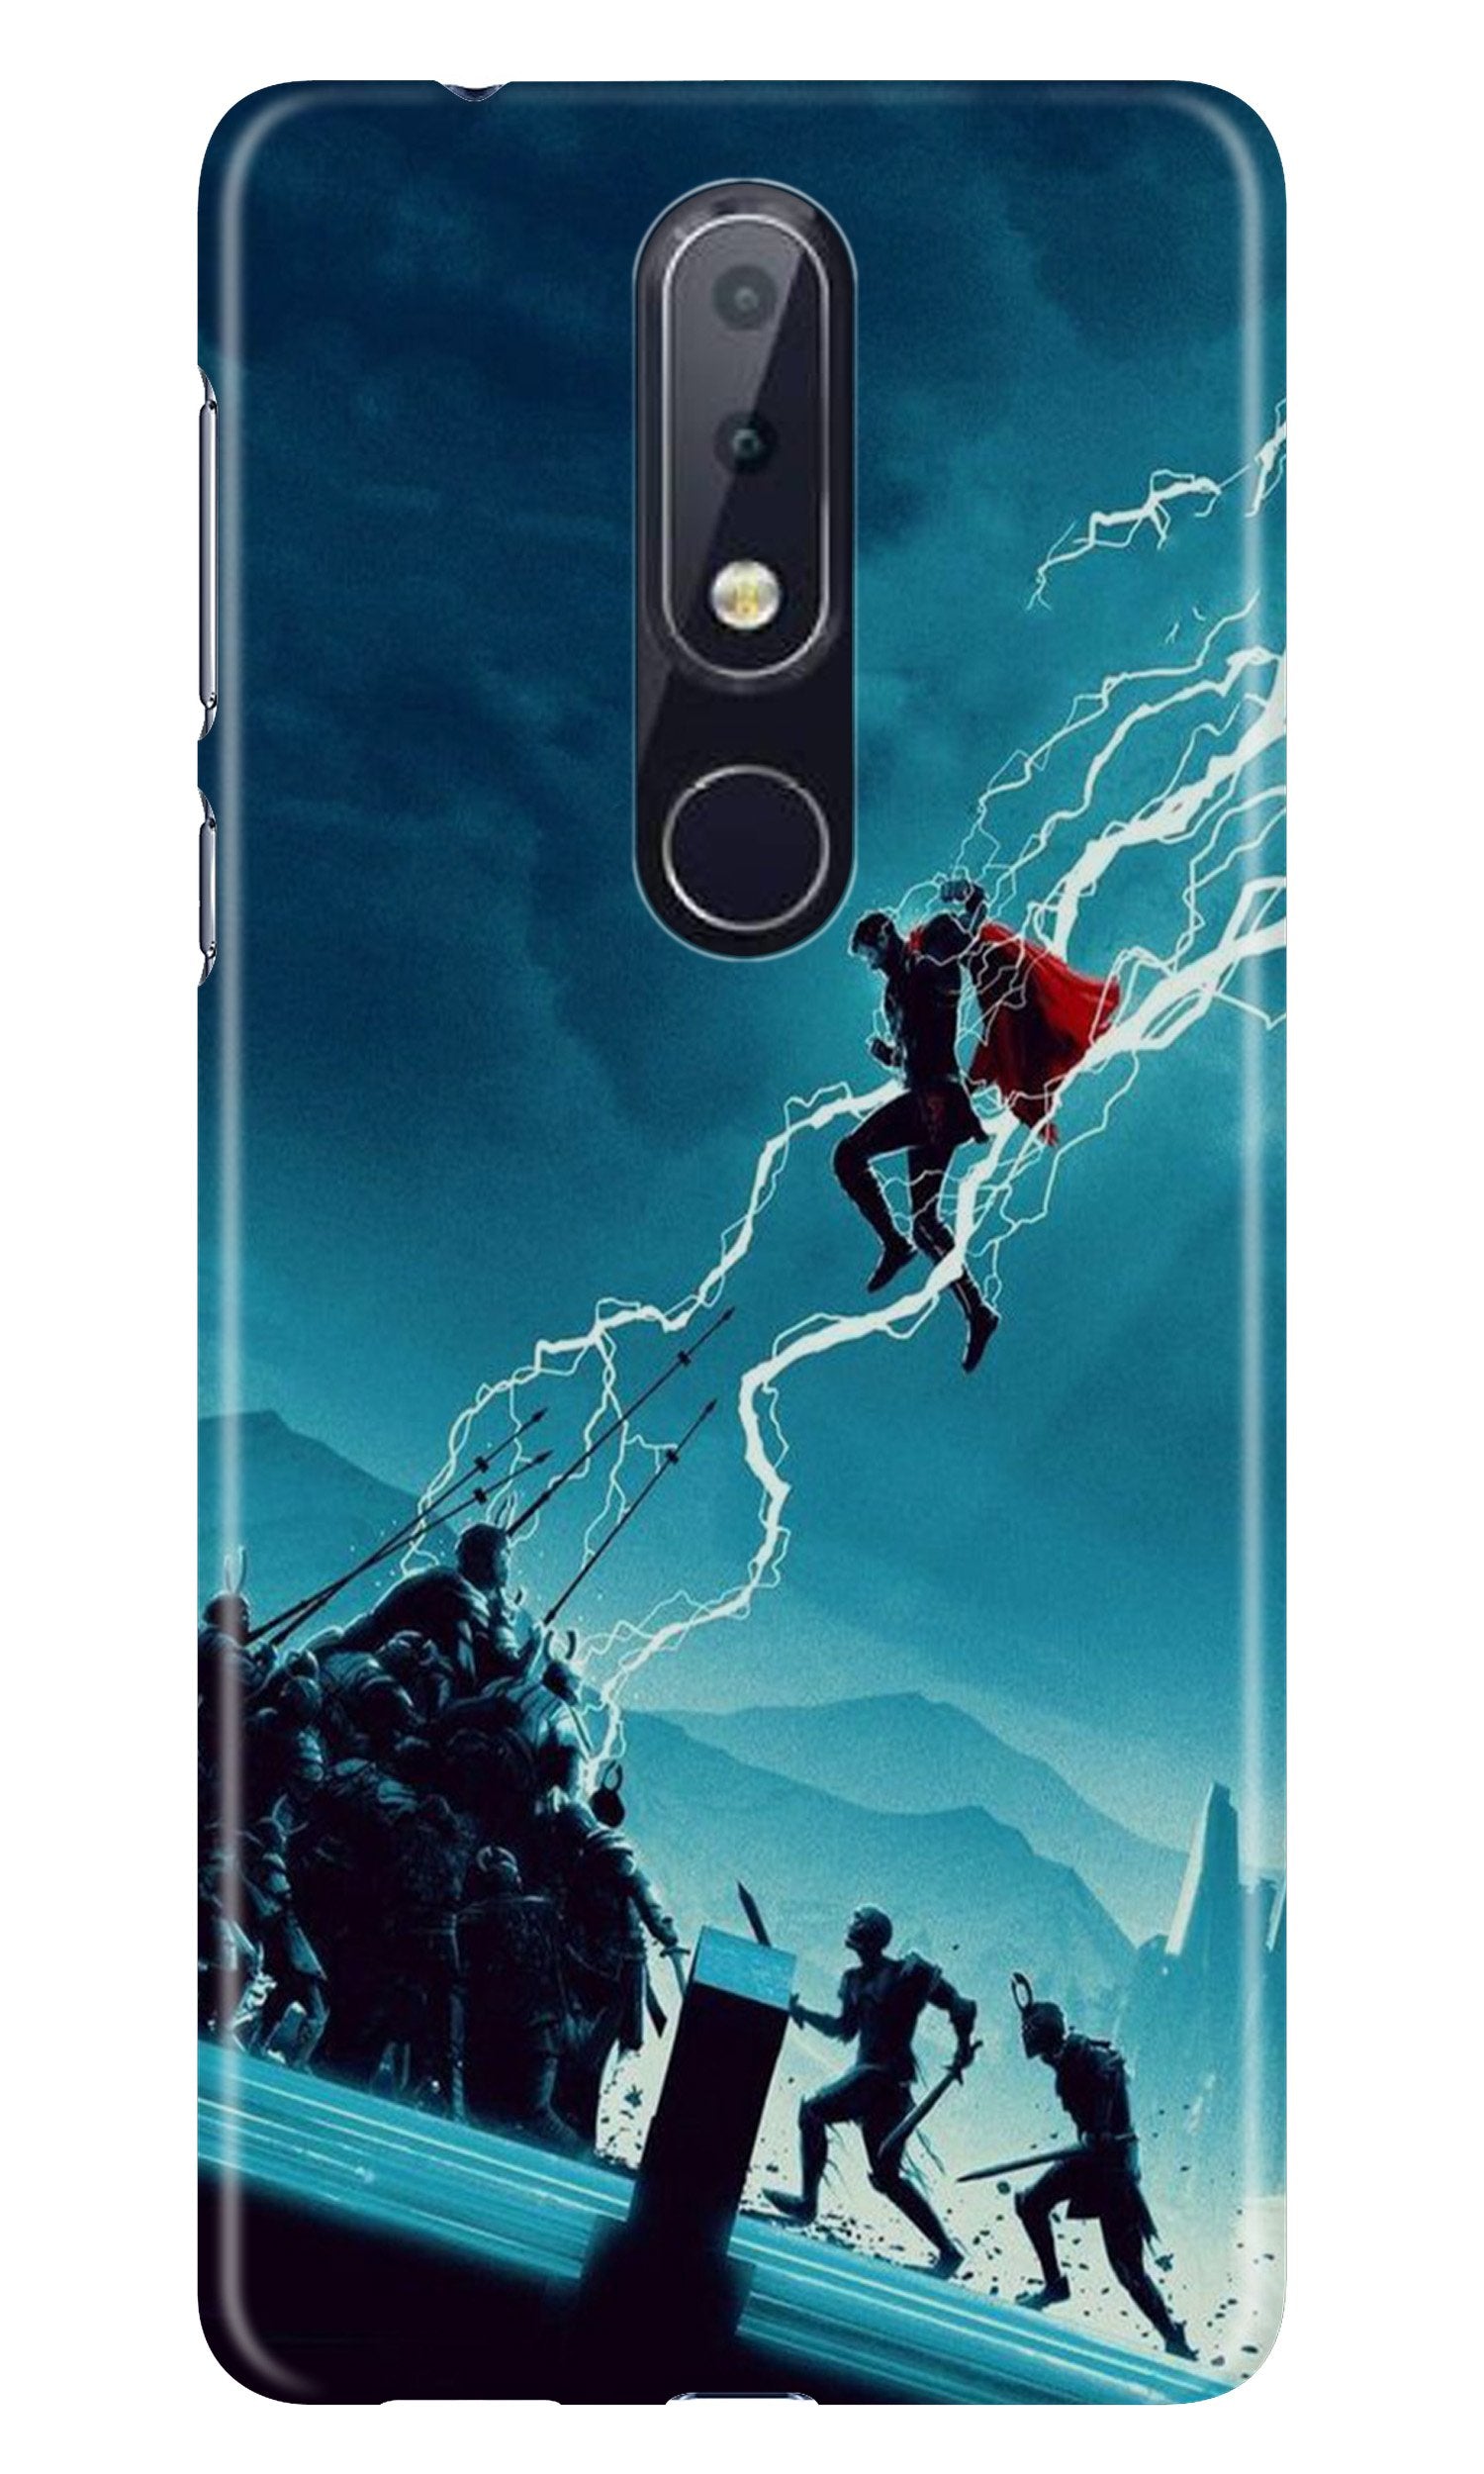 Thor Avengers Case for Nokia 7.1 (Design No. 243)